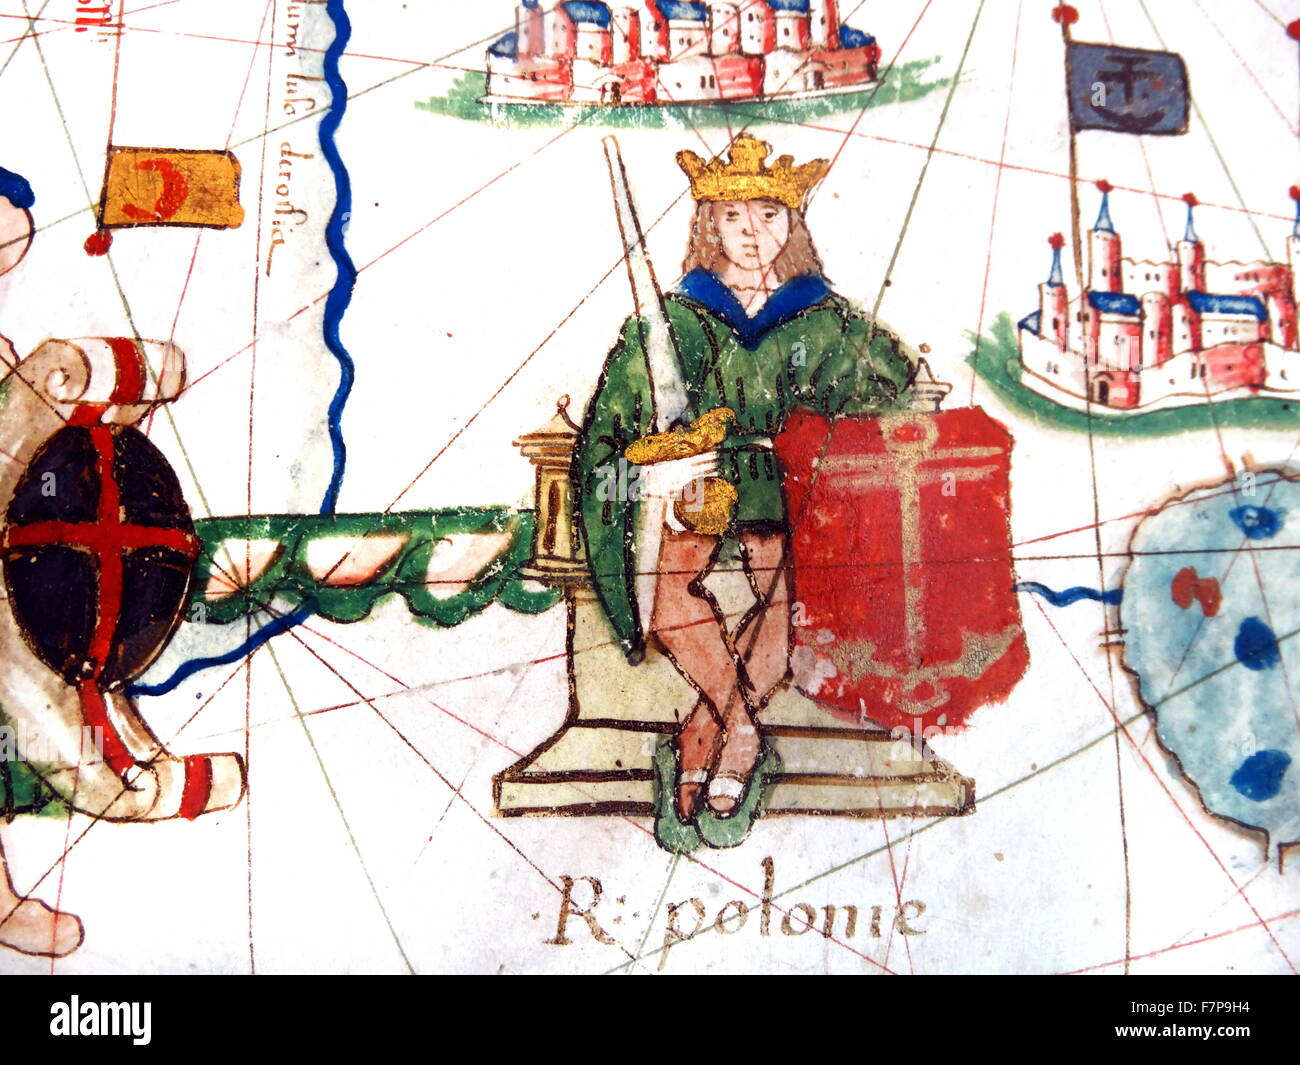 Carte de l'Europe de la Renaissance, Jacopo Russo, 1528, détail du roi de Pologne Sigismond I ; 1467 - 1 Avril 1548 Banque D'Images